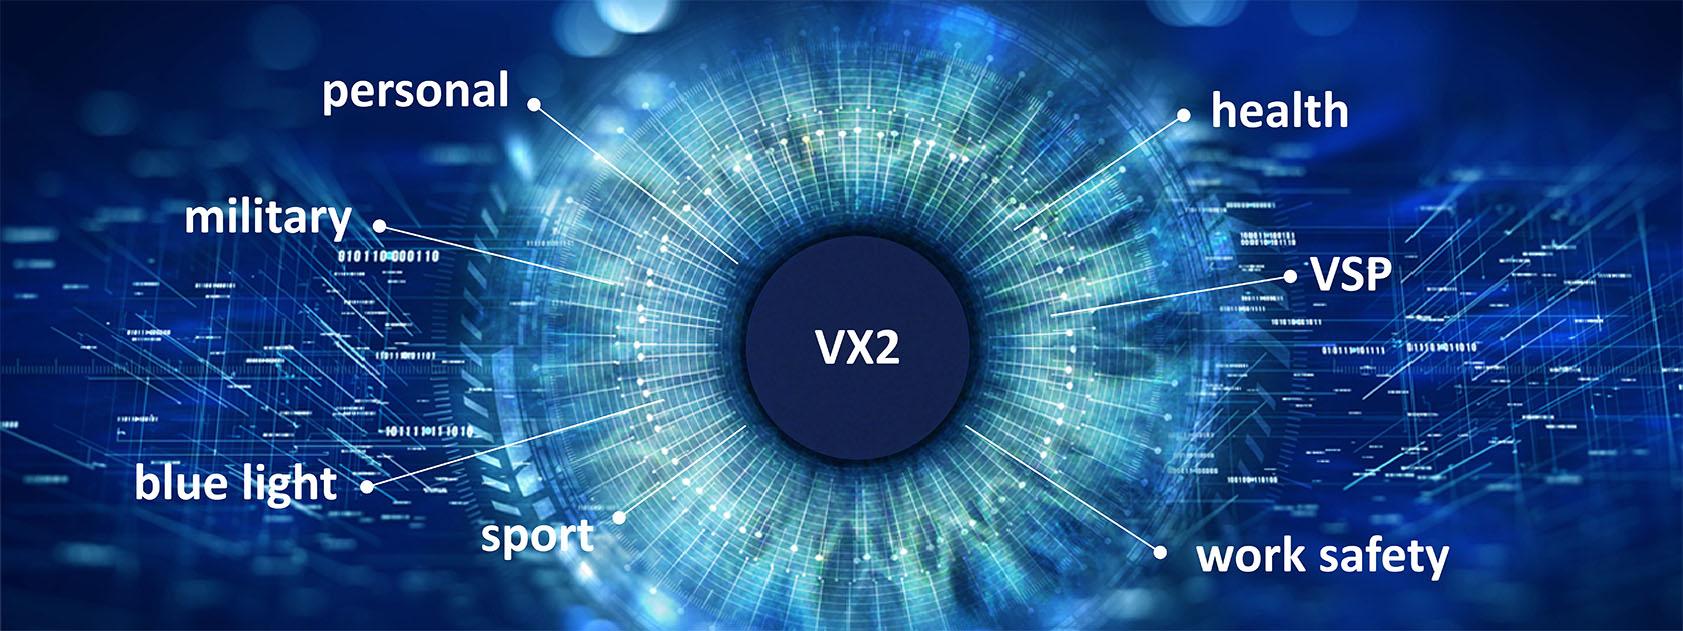 VX2 Technology